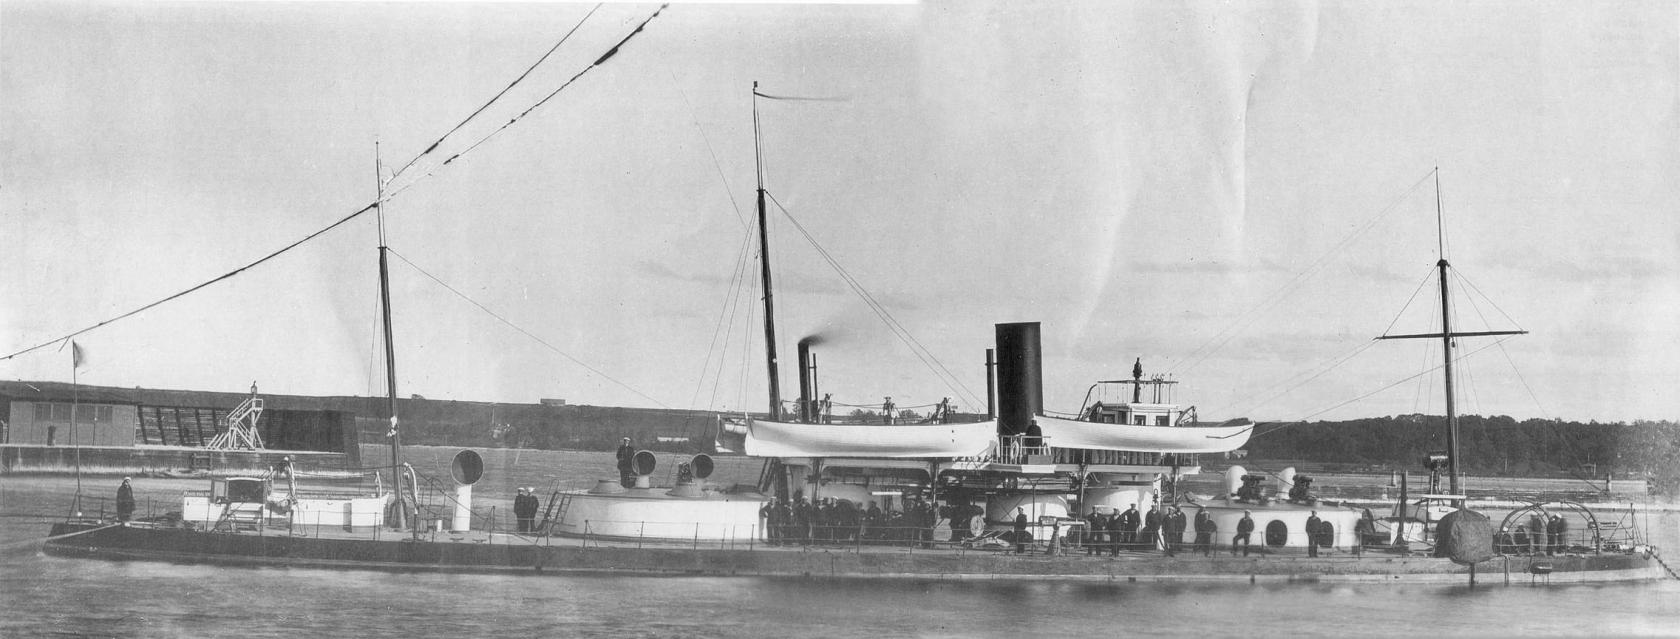 Двухбашенная броненосная лодка Чародейка. 1865-1912. Вступила в строй в 1869. Водоизмещение 1871 т. Размерения 62.9х12.8х3.35 м